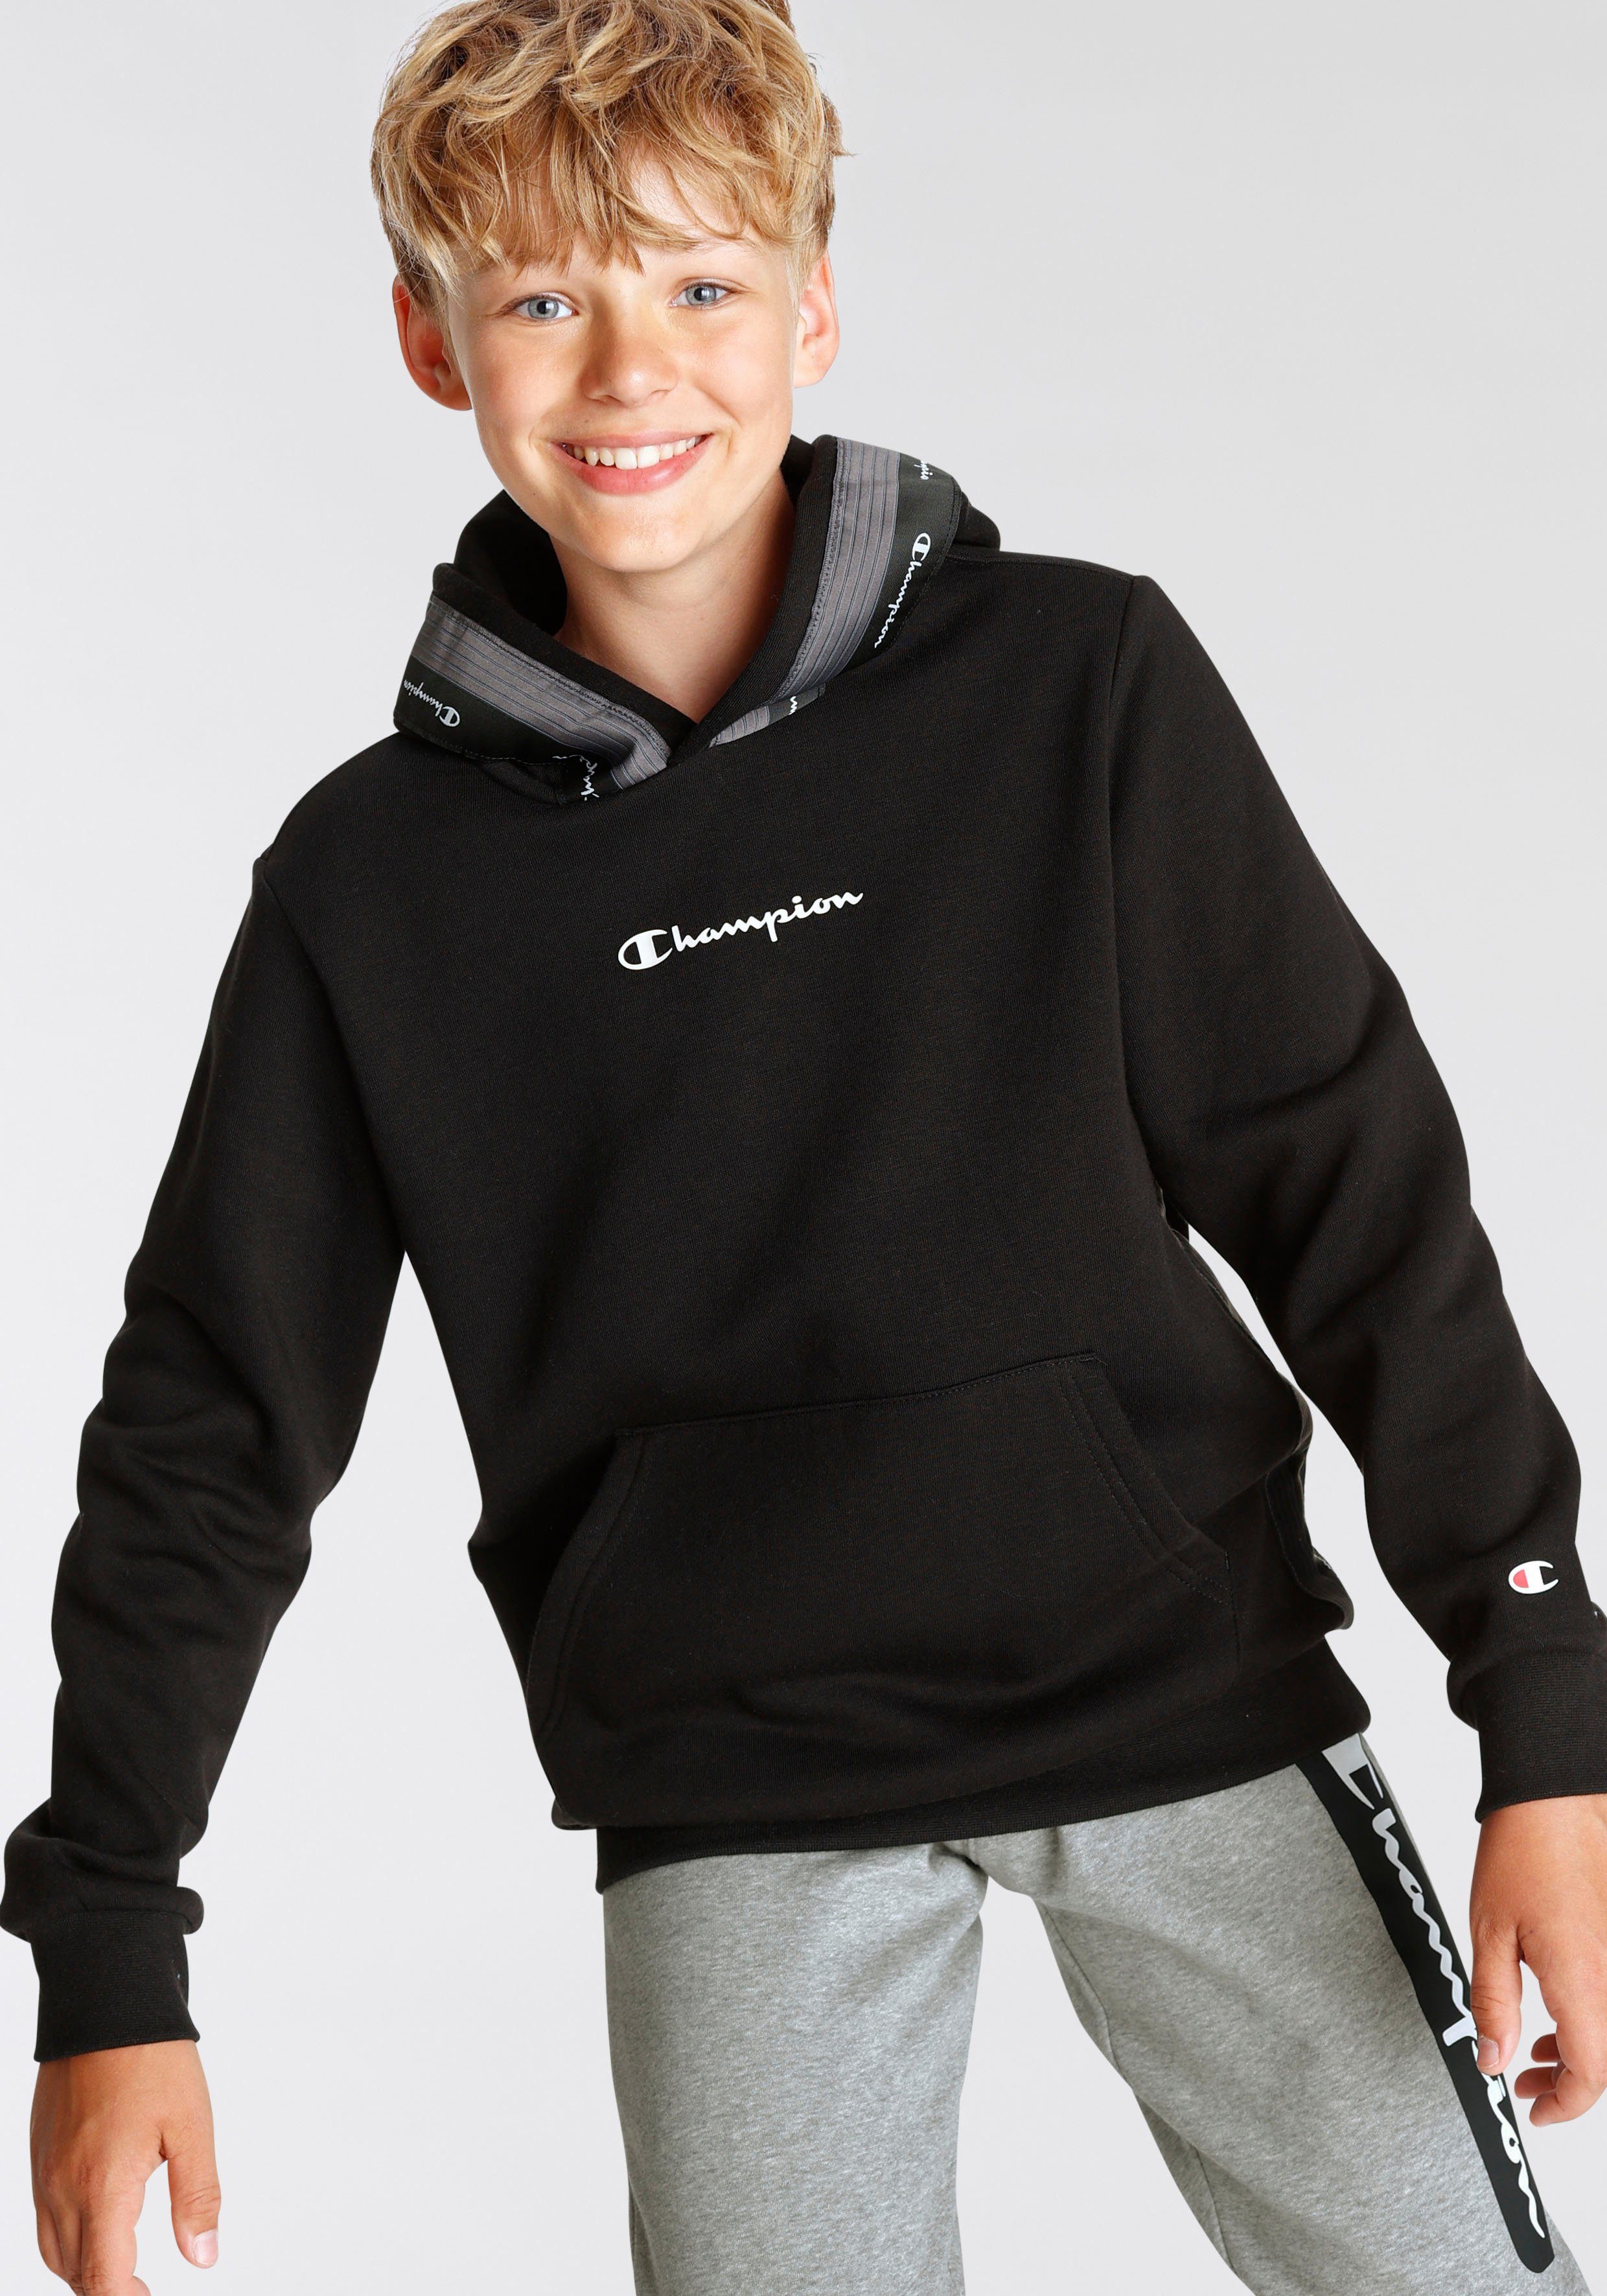 Hooded Sweatshirt Kinder Champion Tape schwarz Kapuzensweatshirt - für